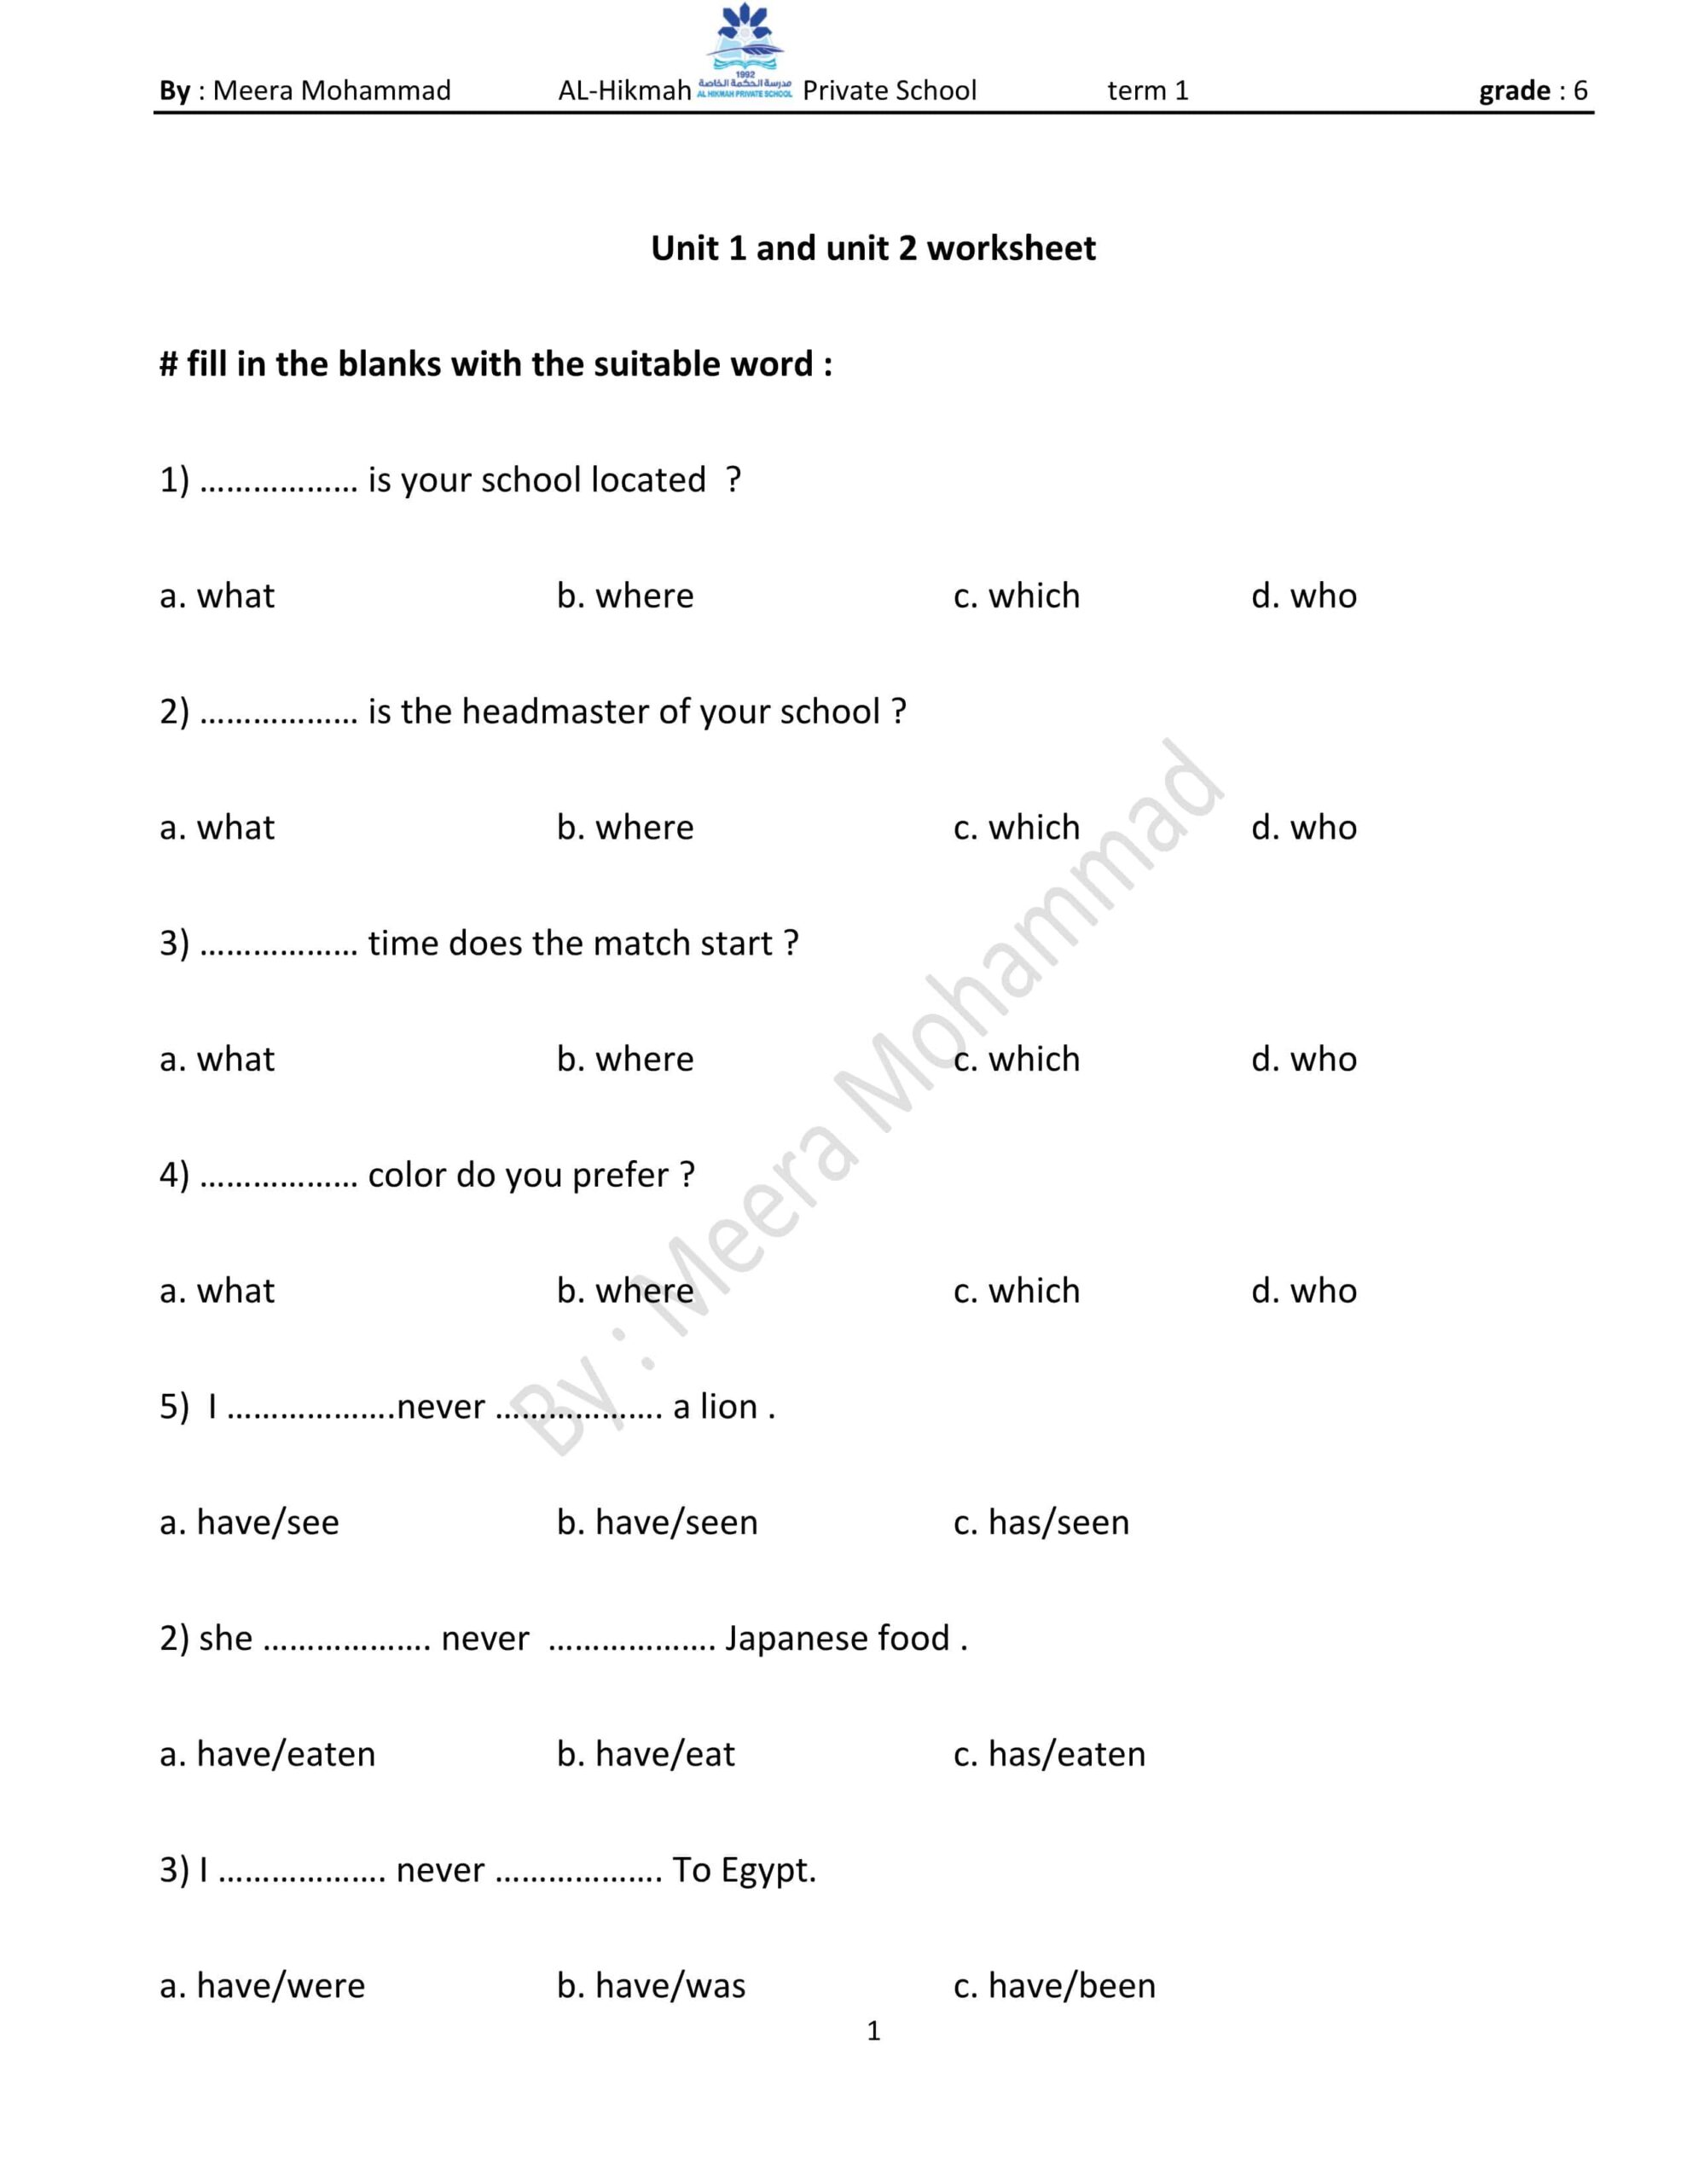 أوراق عمل Unit 1 and unit 2 worksheet اللغة الإنجليزية الصف السادس